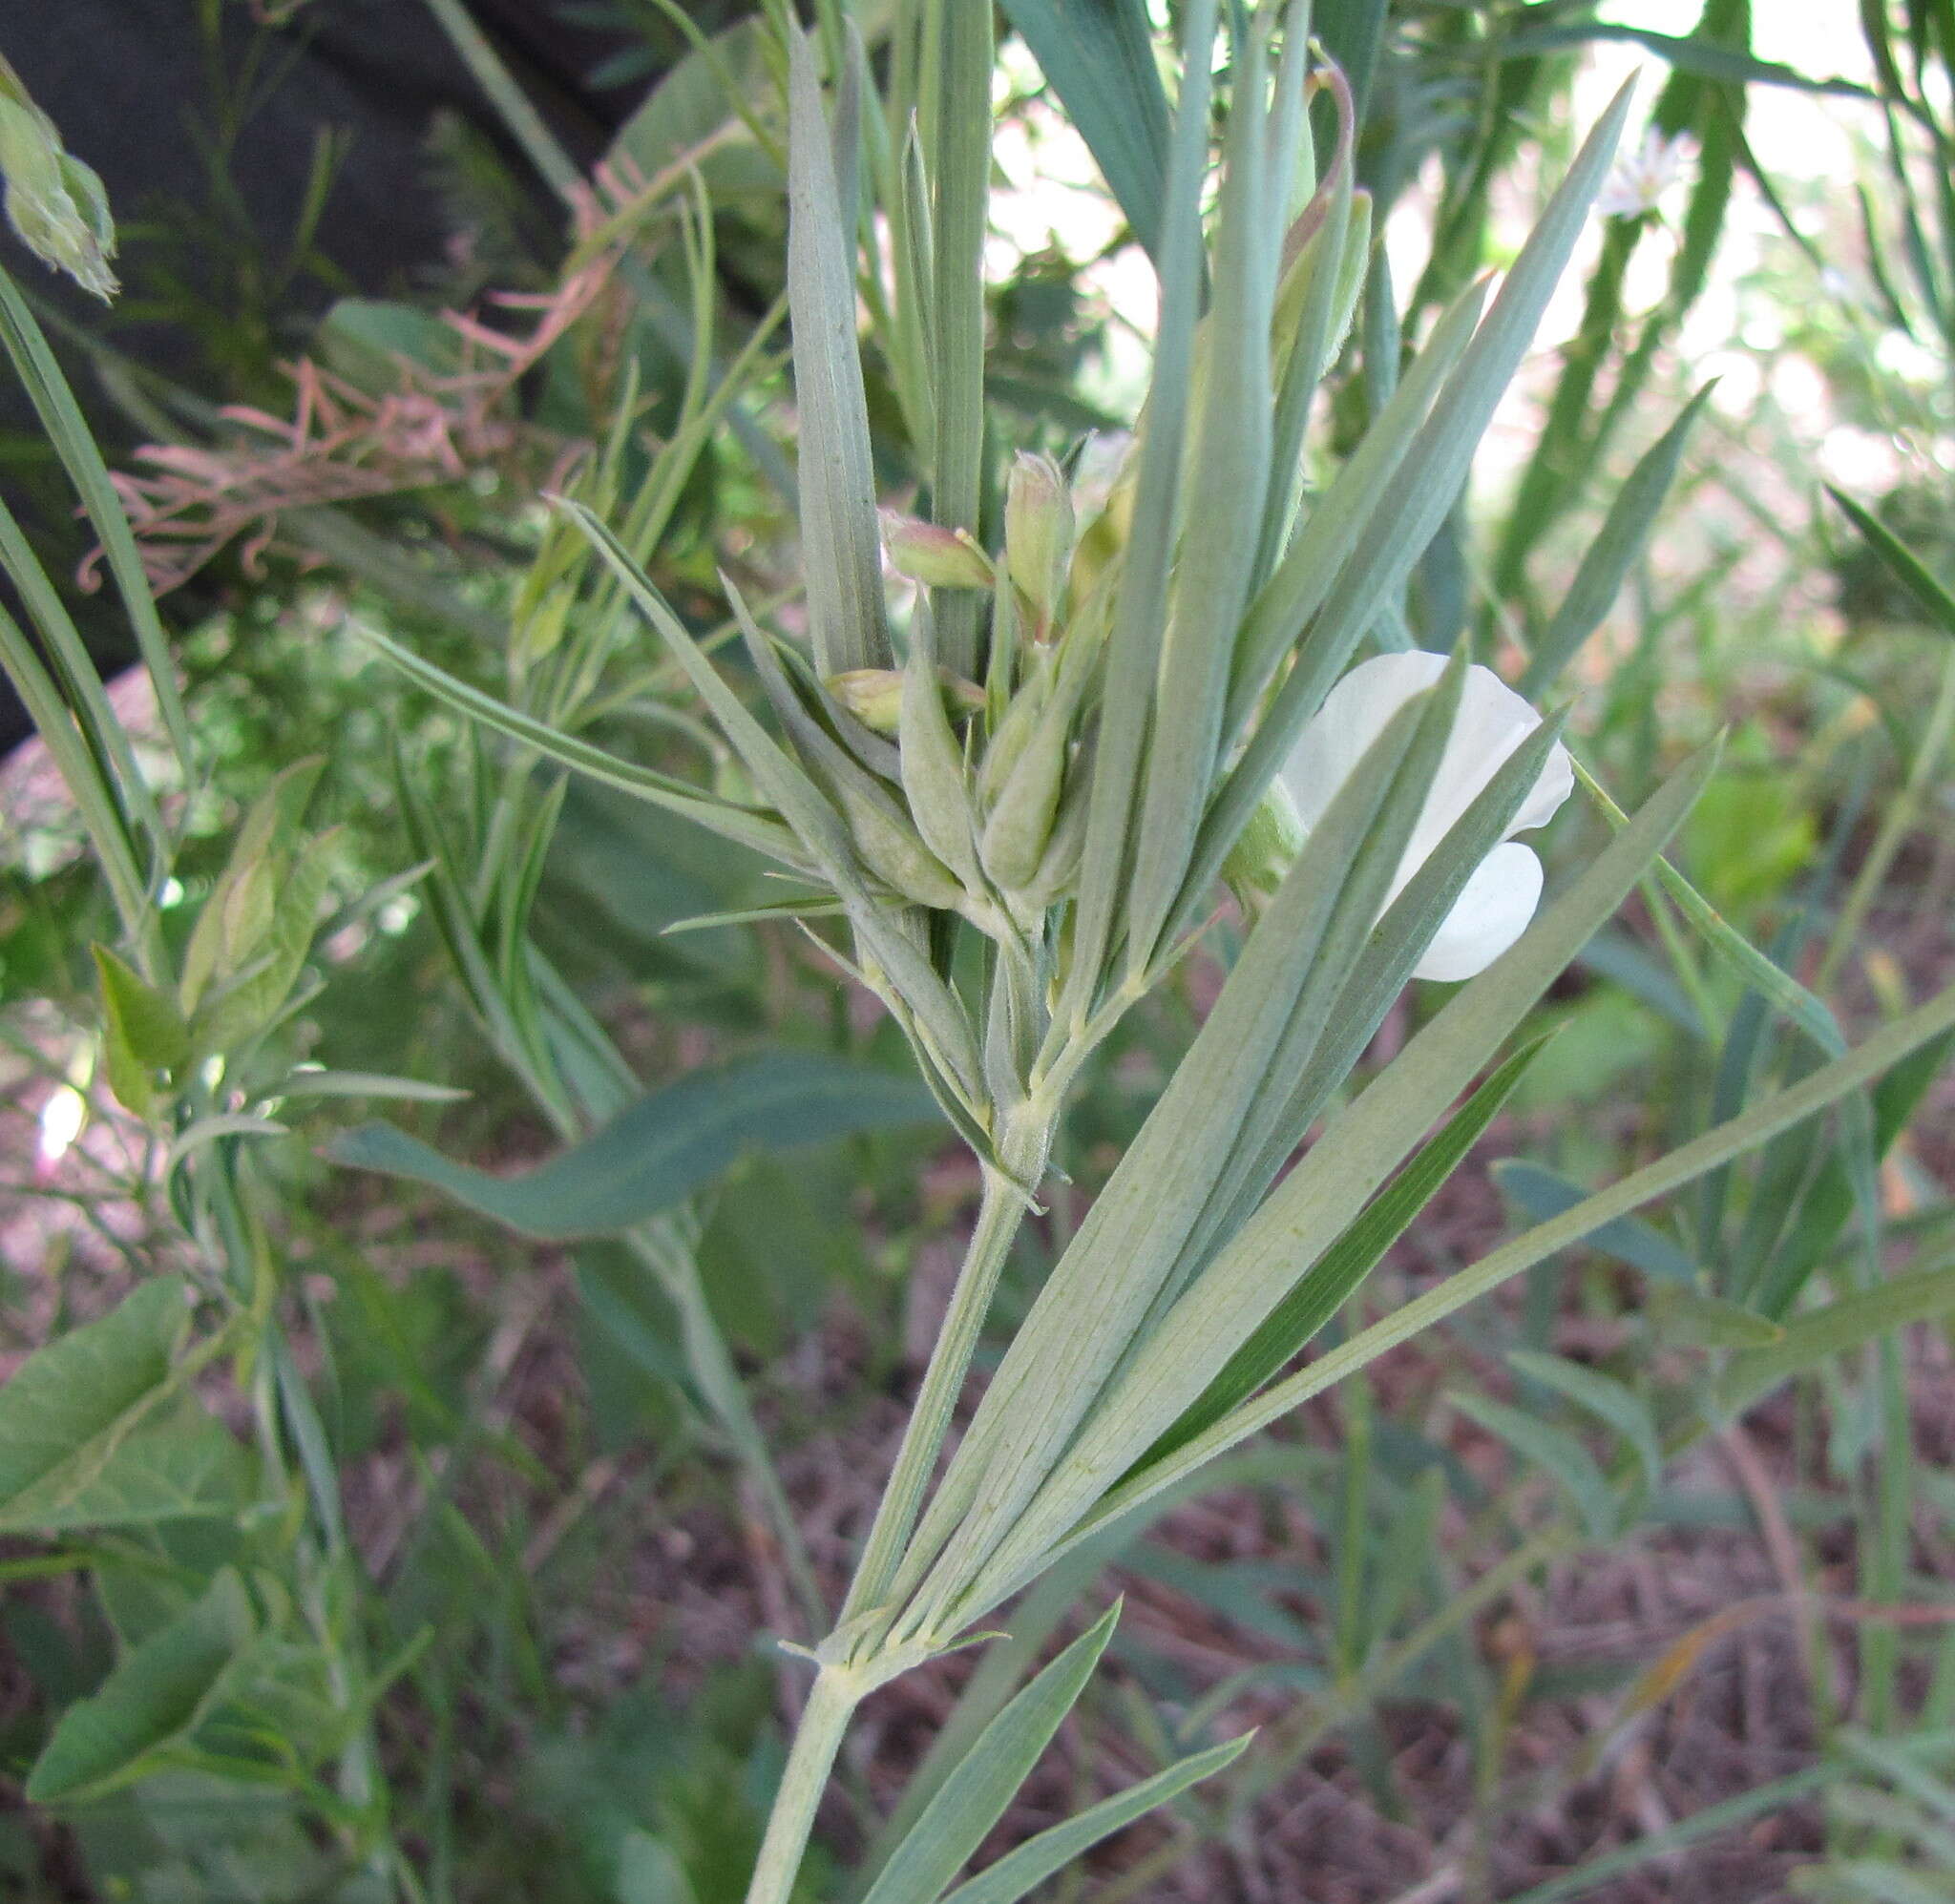 Image of Lathyrus pannonicus subsp. collinus (J. Ortmann) Soo